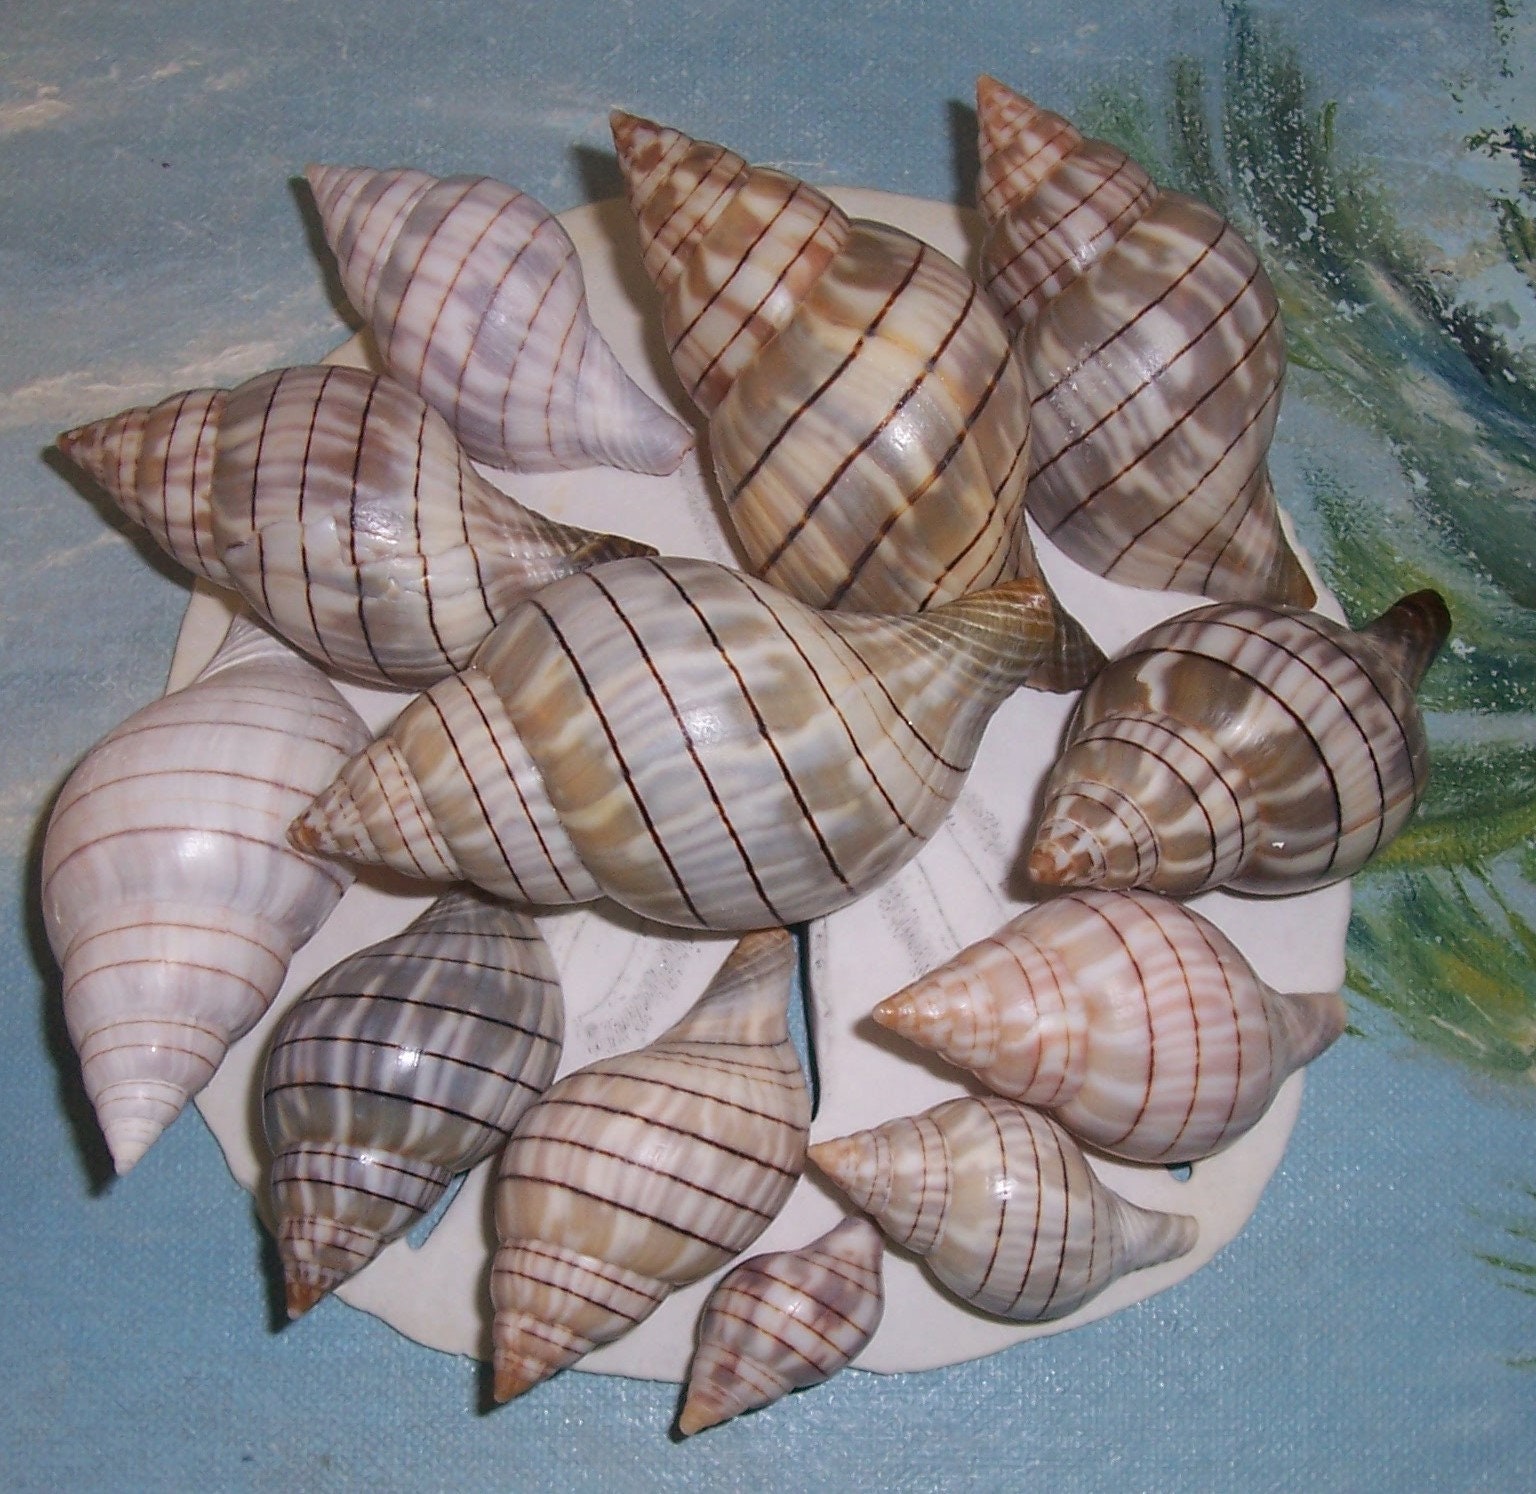 Seashells Art, Seashells for Crafts, Natural Seashells, Natural Shells,  Natural Sea Shells, Seashell Decorations, Florida Seashells 